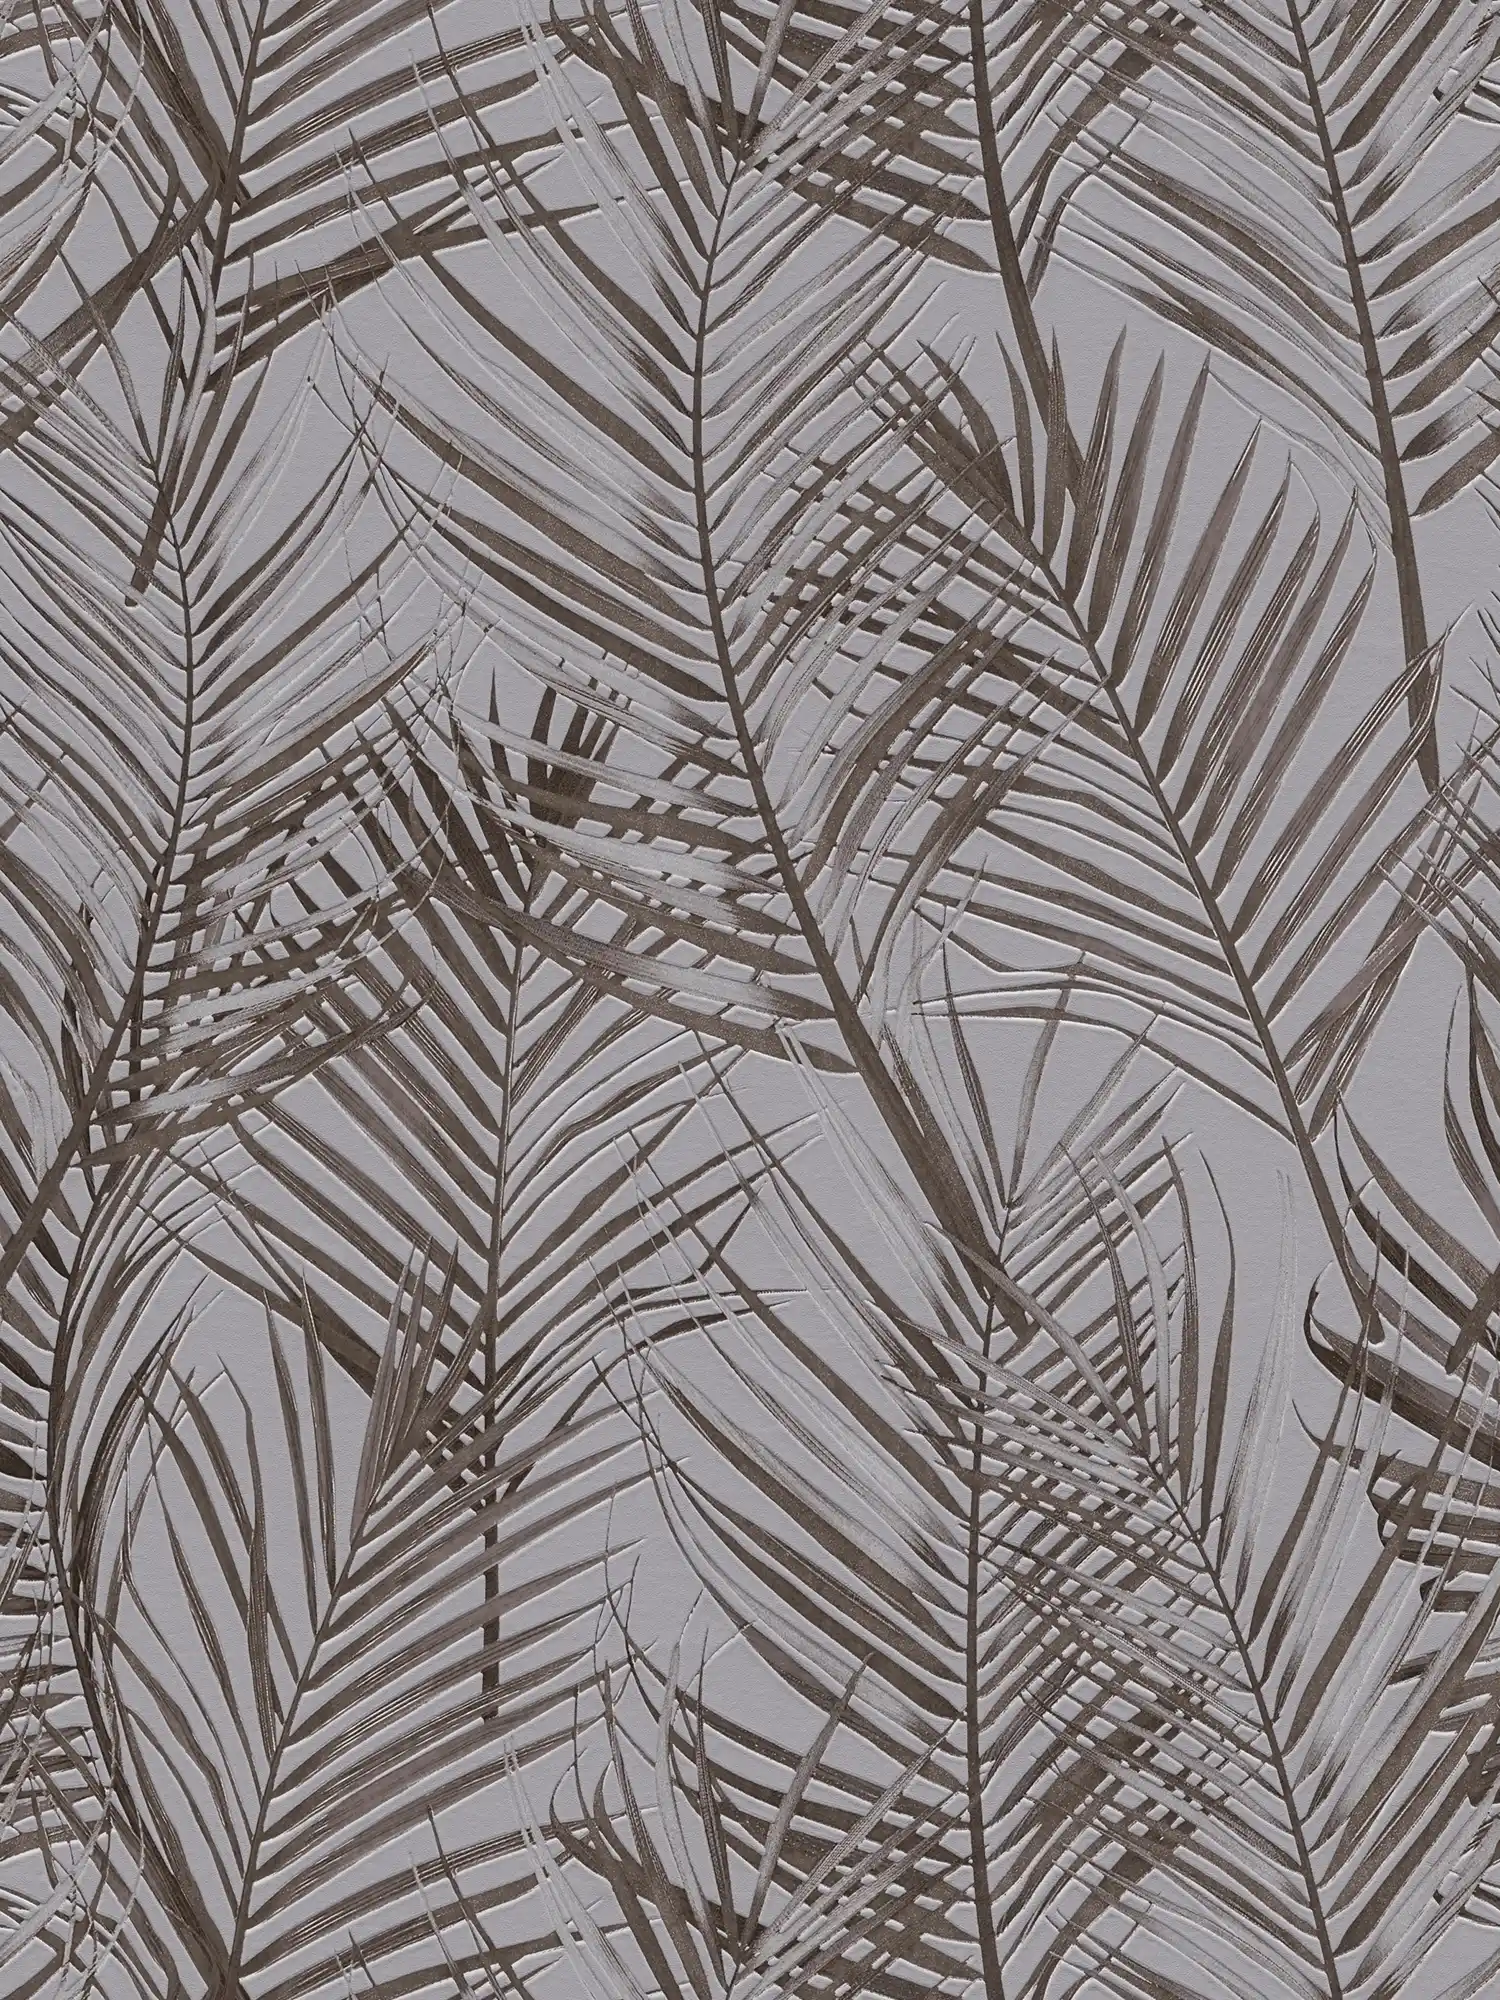             Papel pintado floral con motivos de palmeras en mate - gris, marrón
        